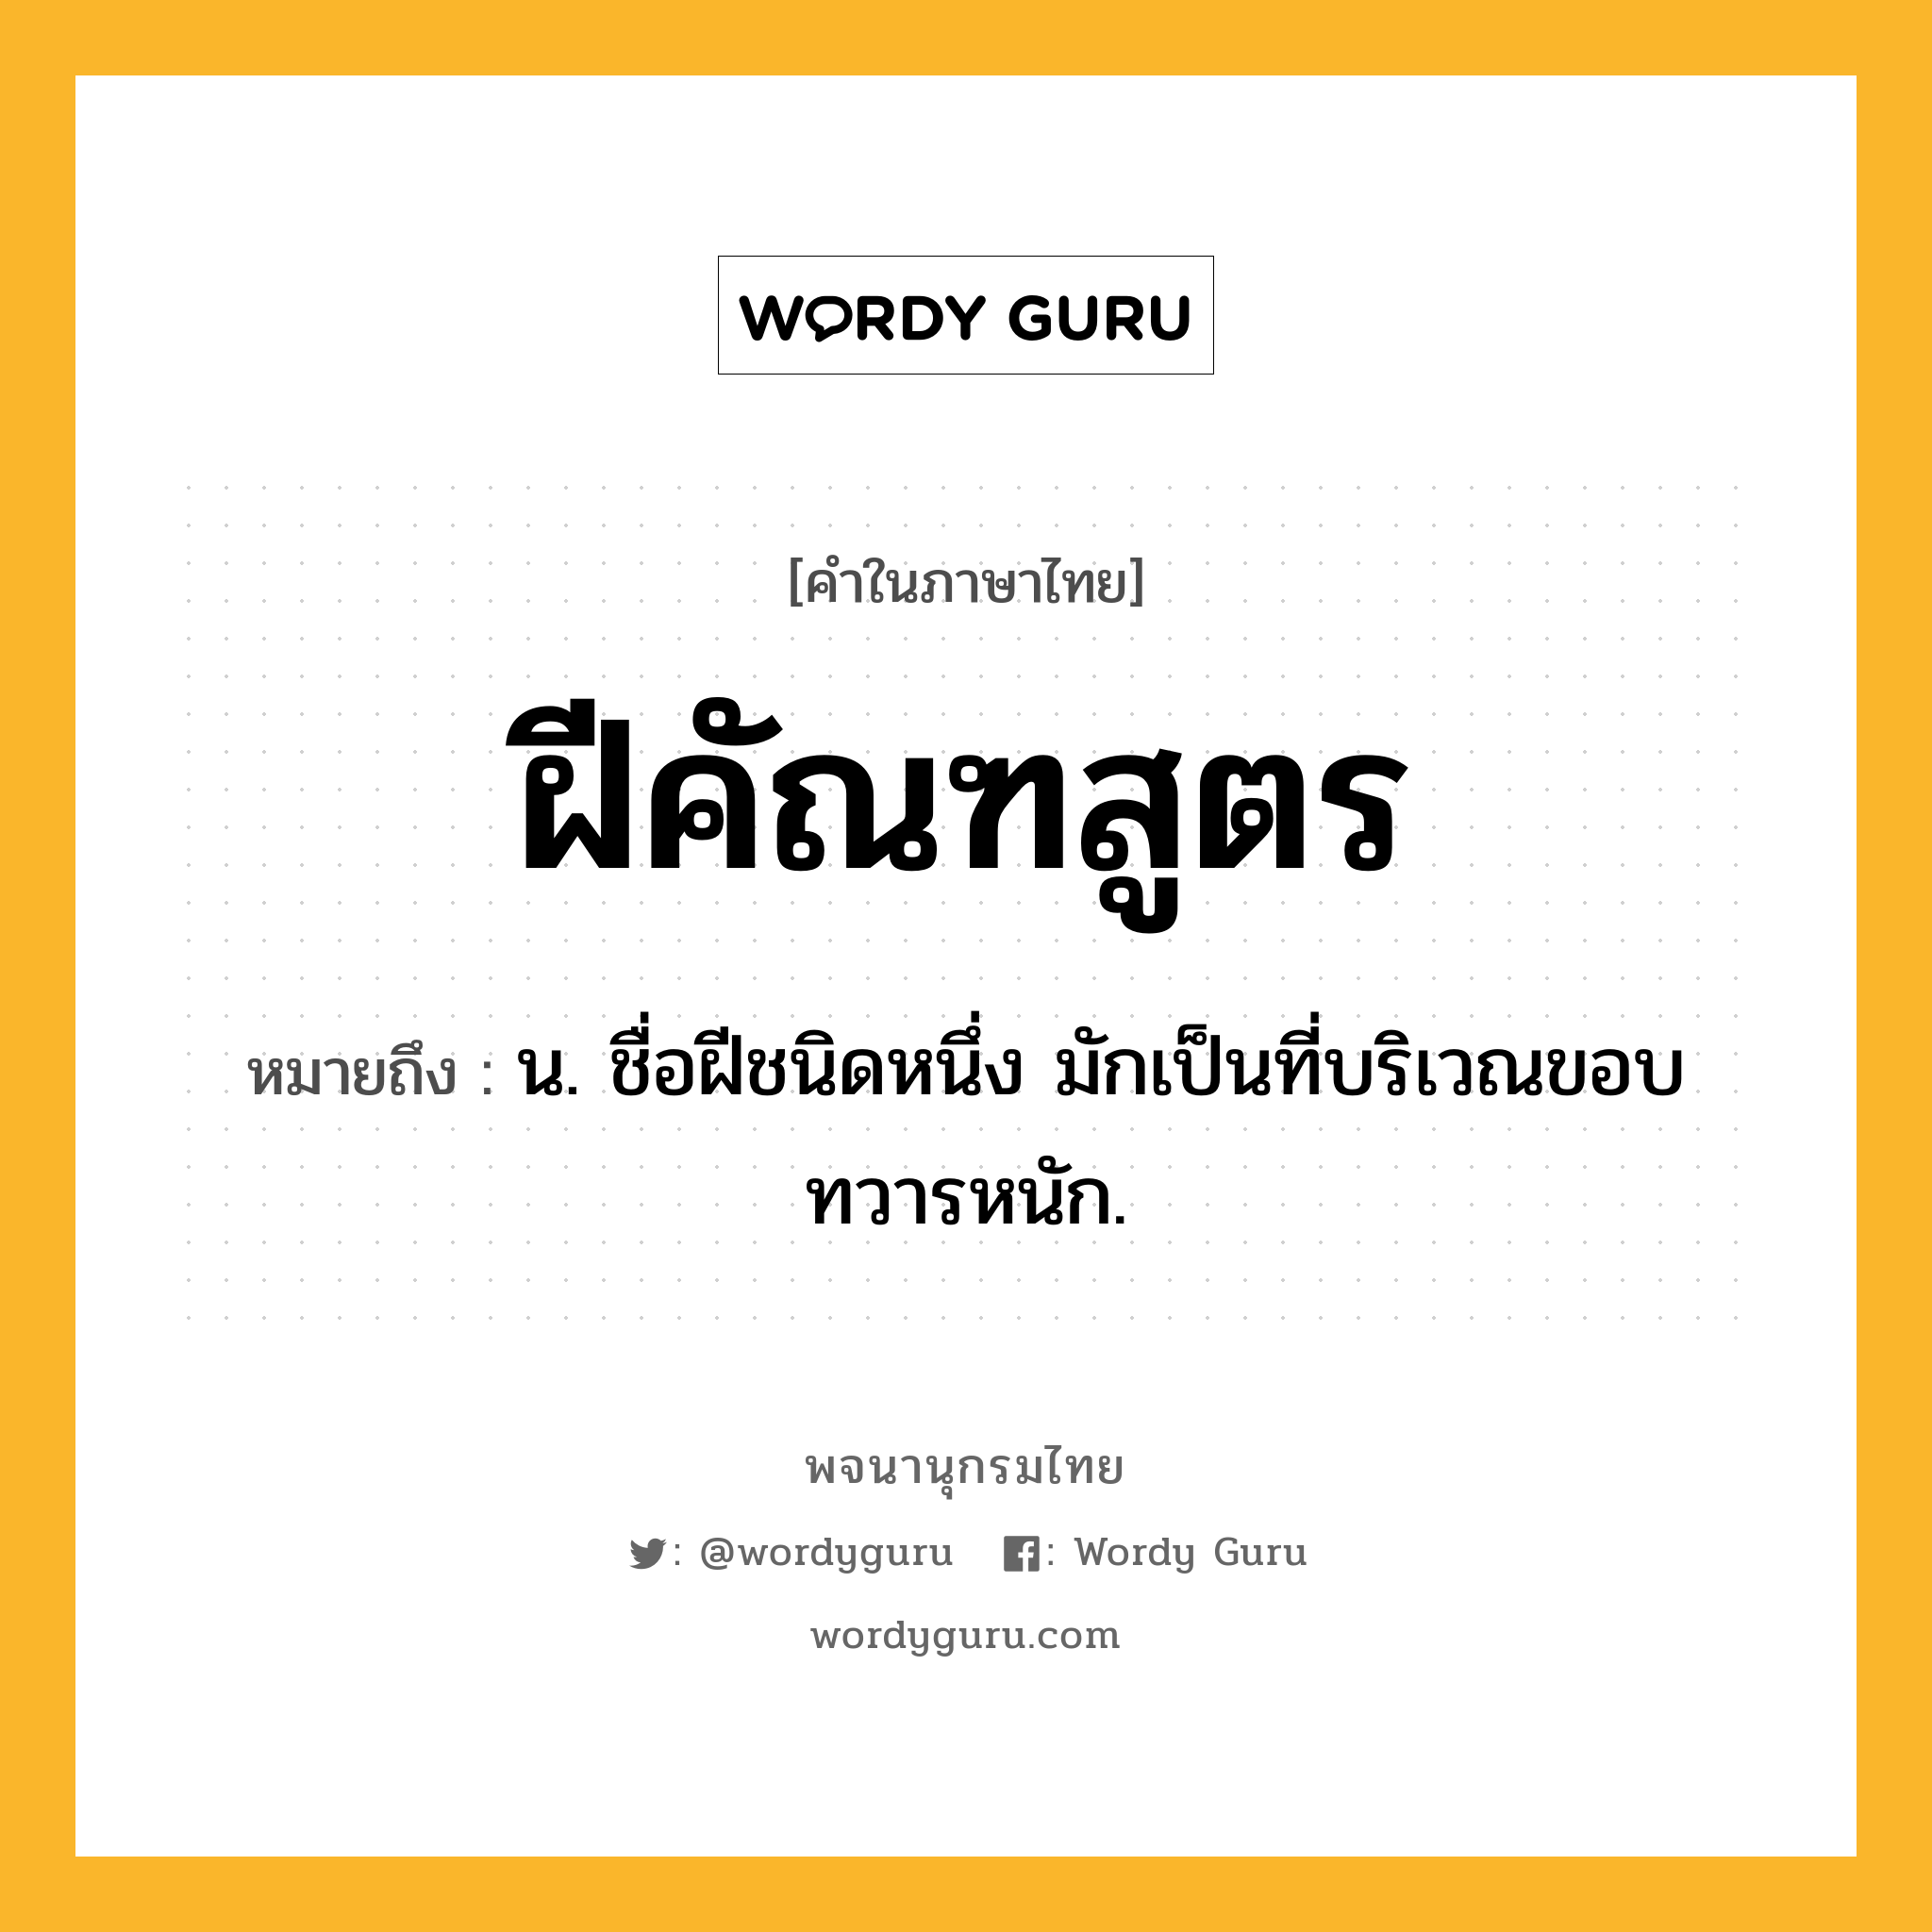 ฝีคัณฑสูตร หมายถึงอะไร?, คำในภาษาไทย ฝีคัณฑสูตร หมายถึง น. ชื่อฝีชนิดหนึ่ง มักเป็นที่บริเวณขอบทวารหนัก.